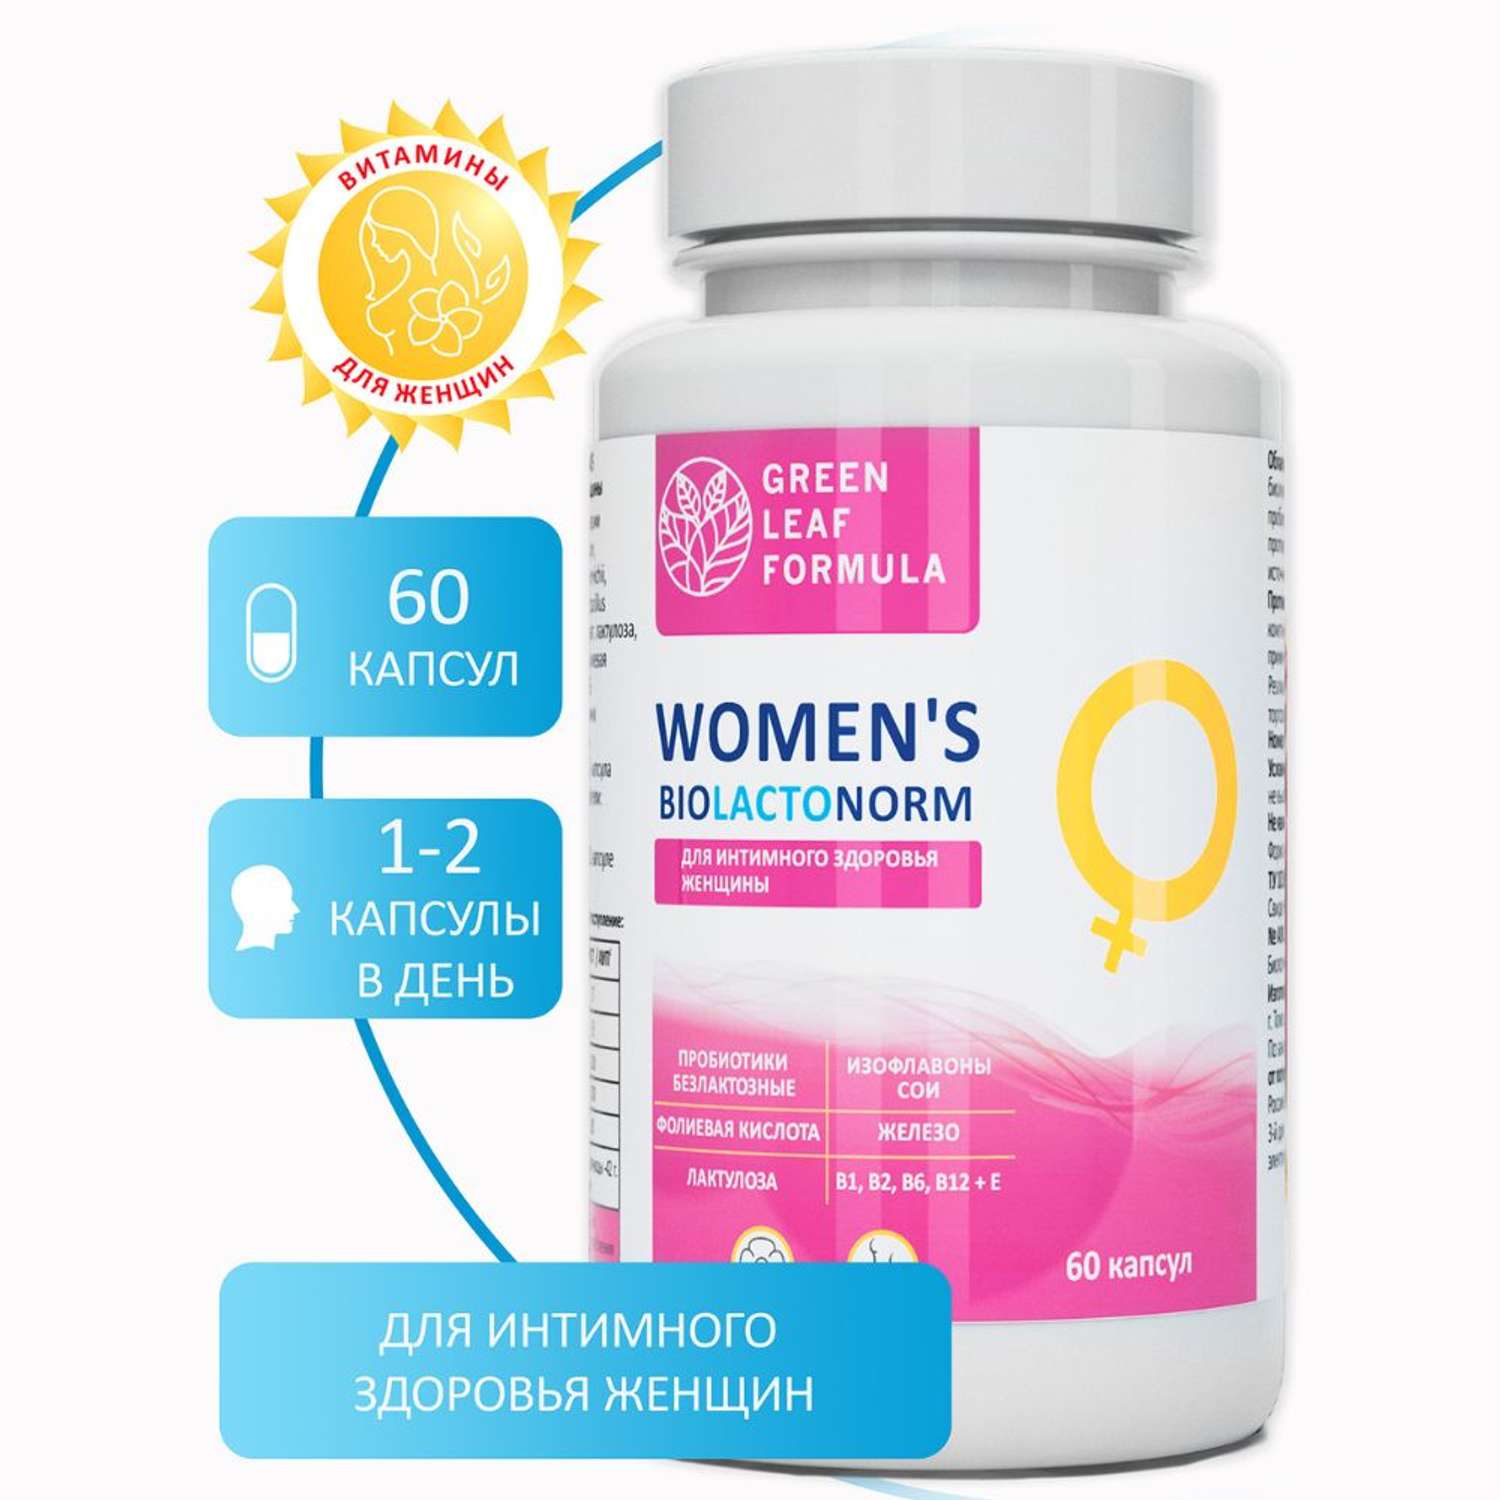 Пробиотики для женщин Green Leaf Formula для интимного здоровья фитоэстрогены железо витамины 3 банки - фото 2